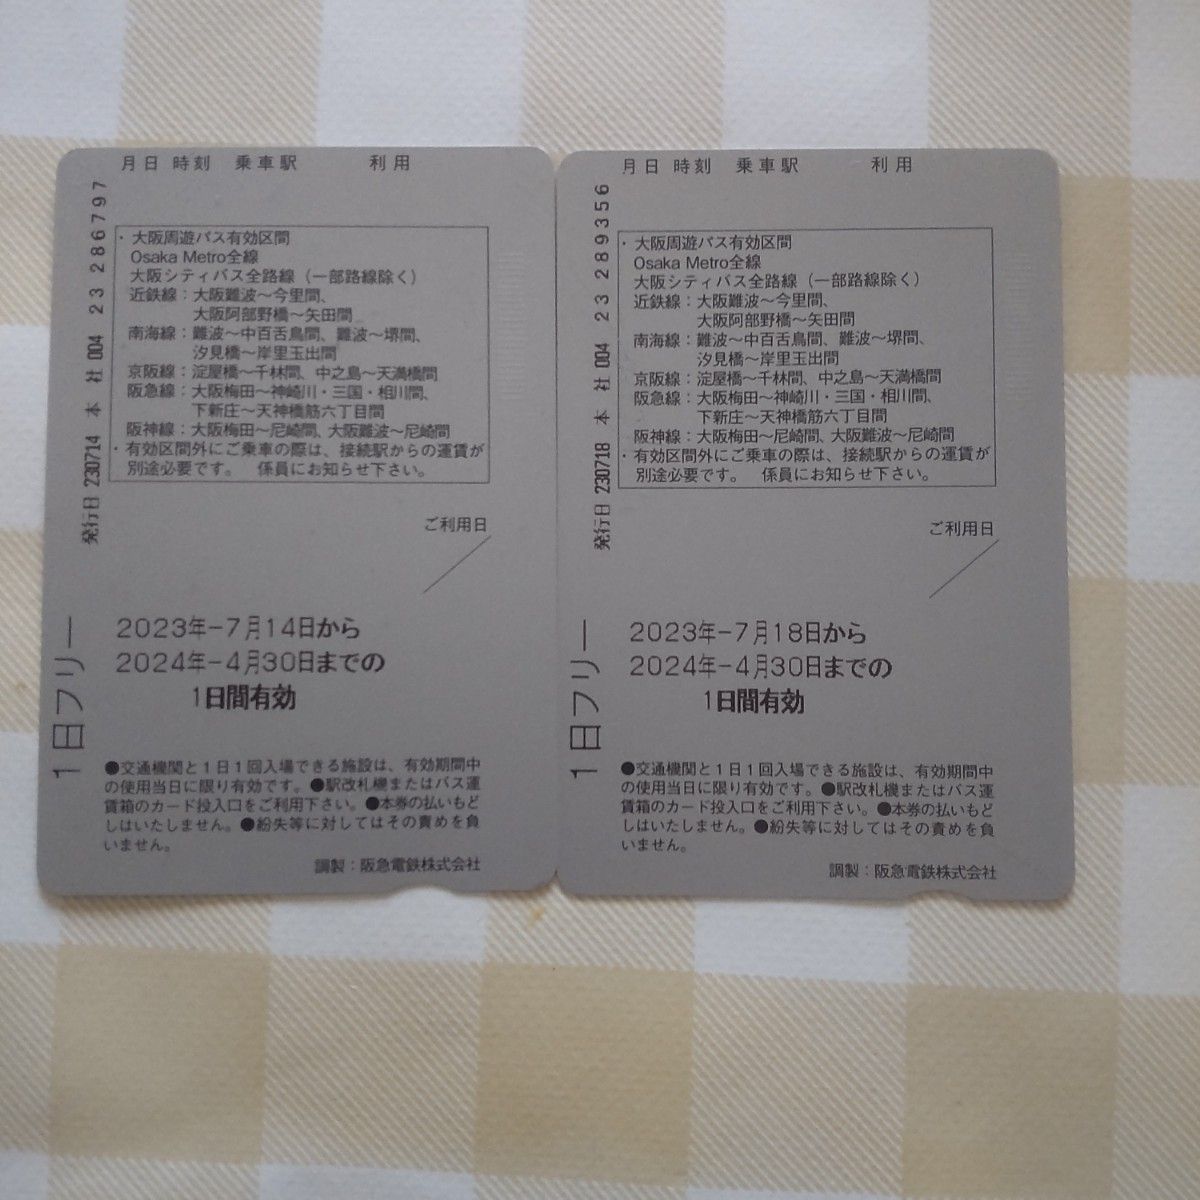 大阪周遊パス1日券 2枚セット Osaka amazing pass 1day pass 2 tickets set 観光施設フリ